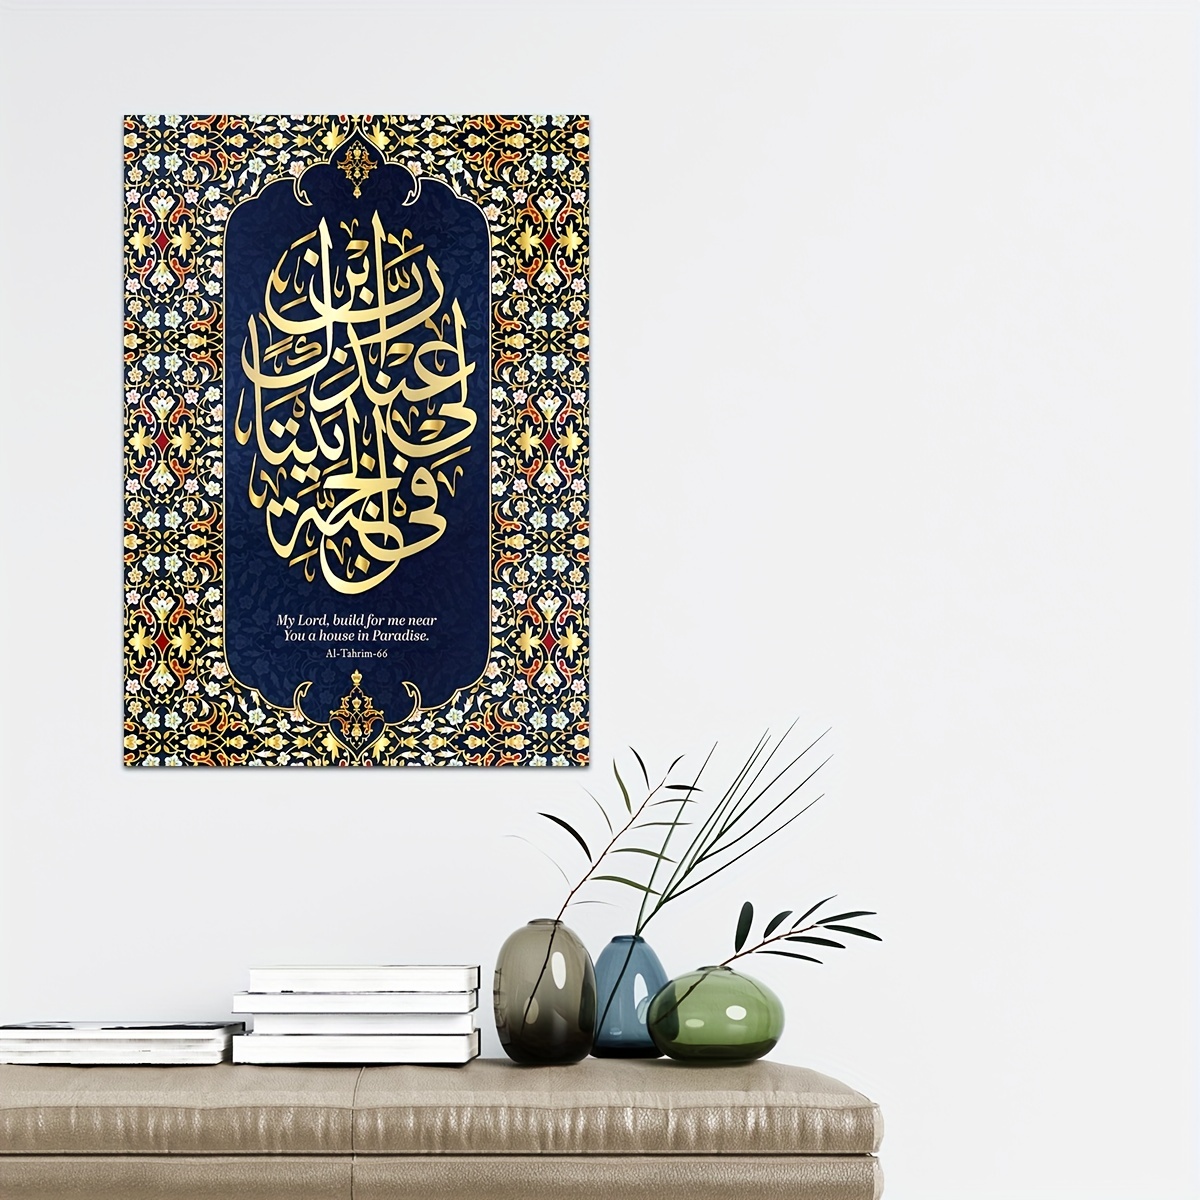 modern muslim art paintings